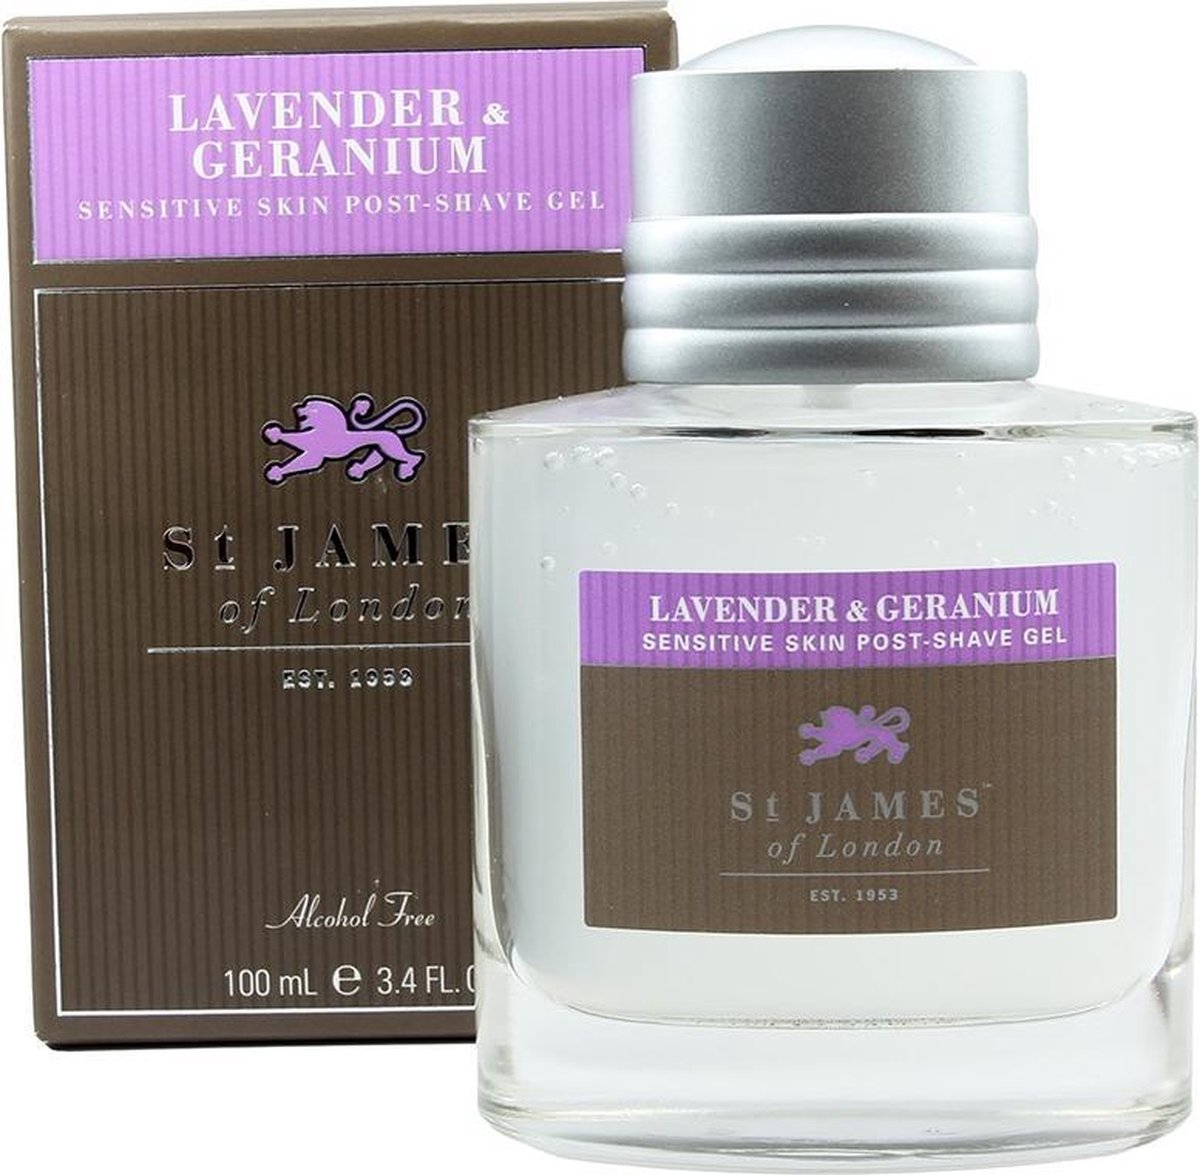 St James of London Aftershave Gel - Lavender & Geranium - 100ml